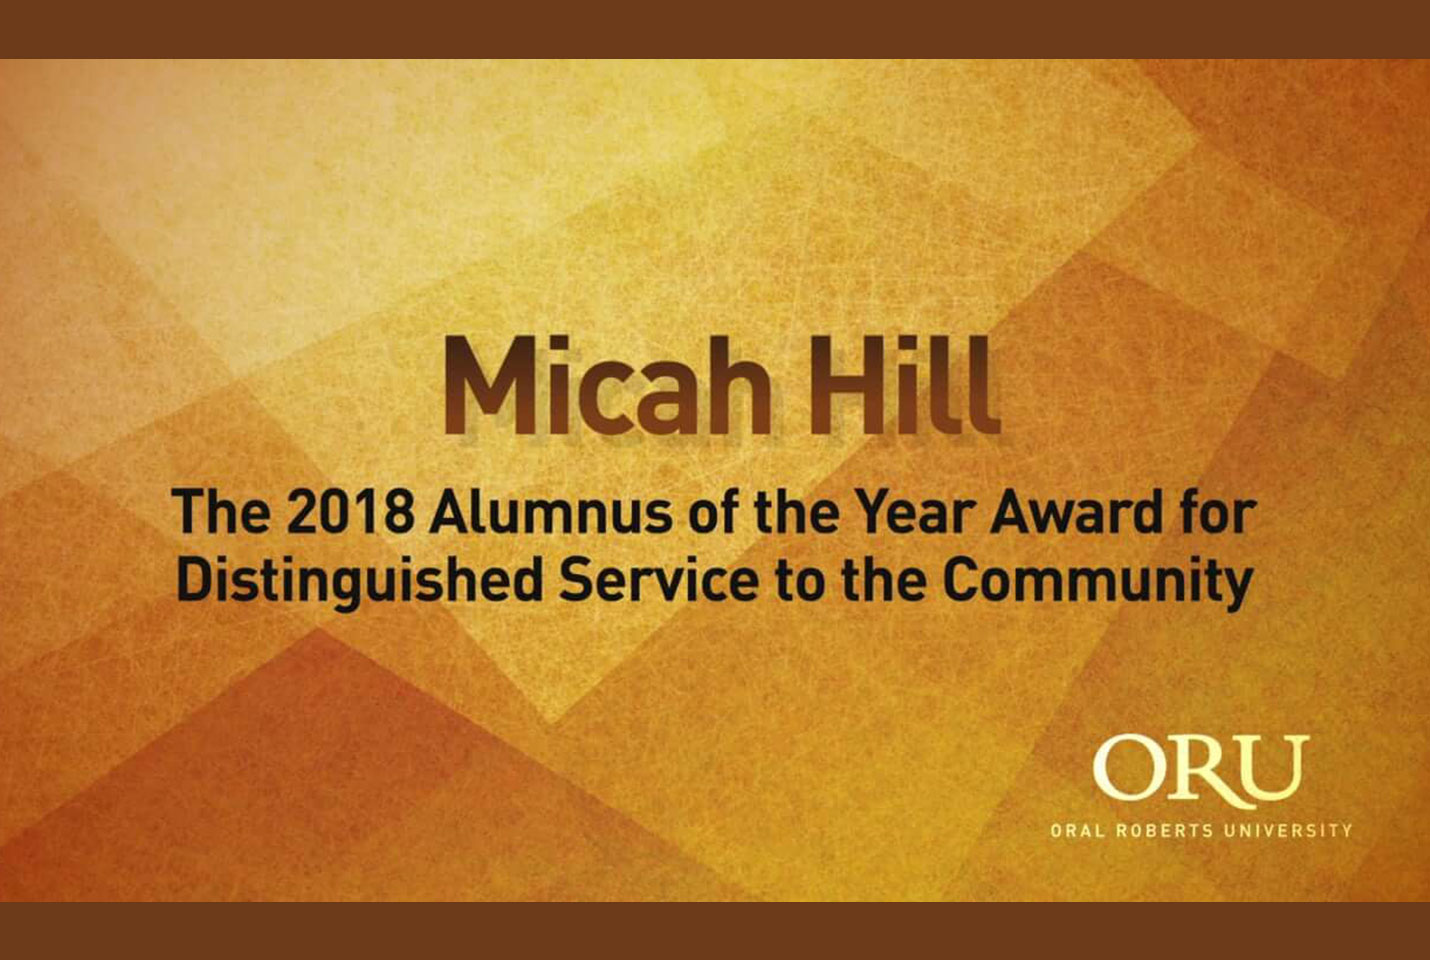 Micah Hill